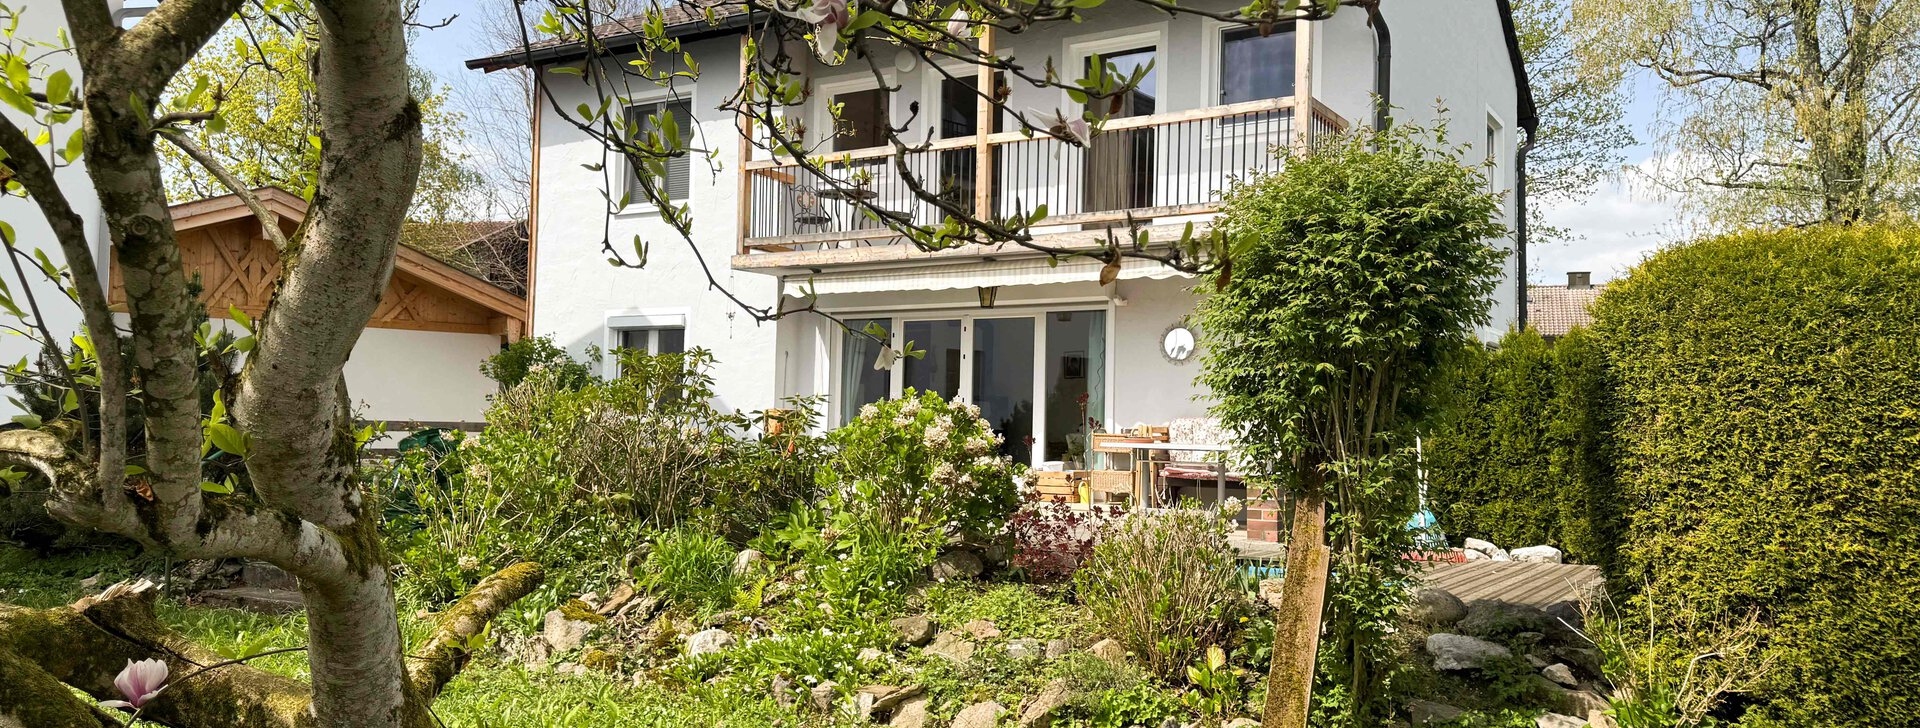 Außenansicht, Einfamilienhaus, Immobilie kaufen, Wolkersdorf-Traunstein | © HausBauHaus GmbH 